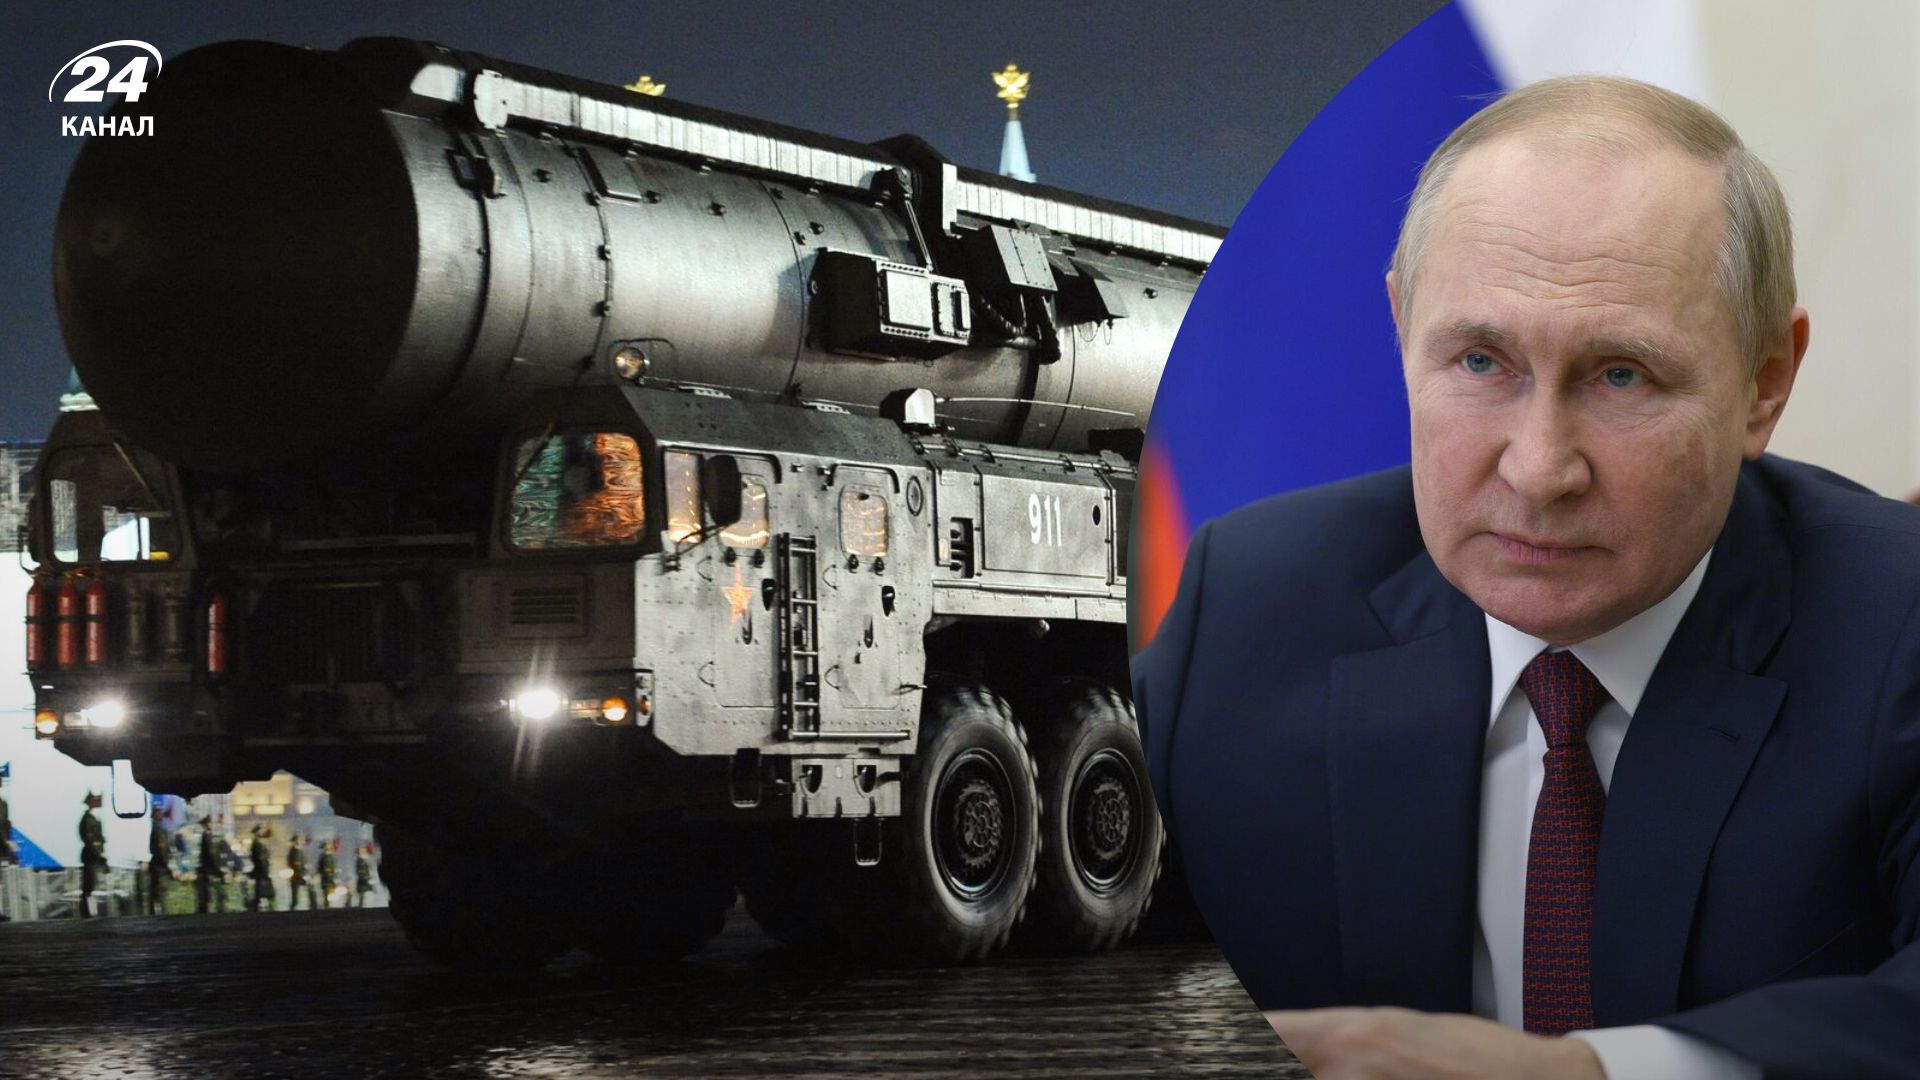 Ядерный удар со стороны России – готовится ли Запад к возможной угрозе со стороны Путина